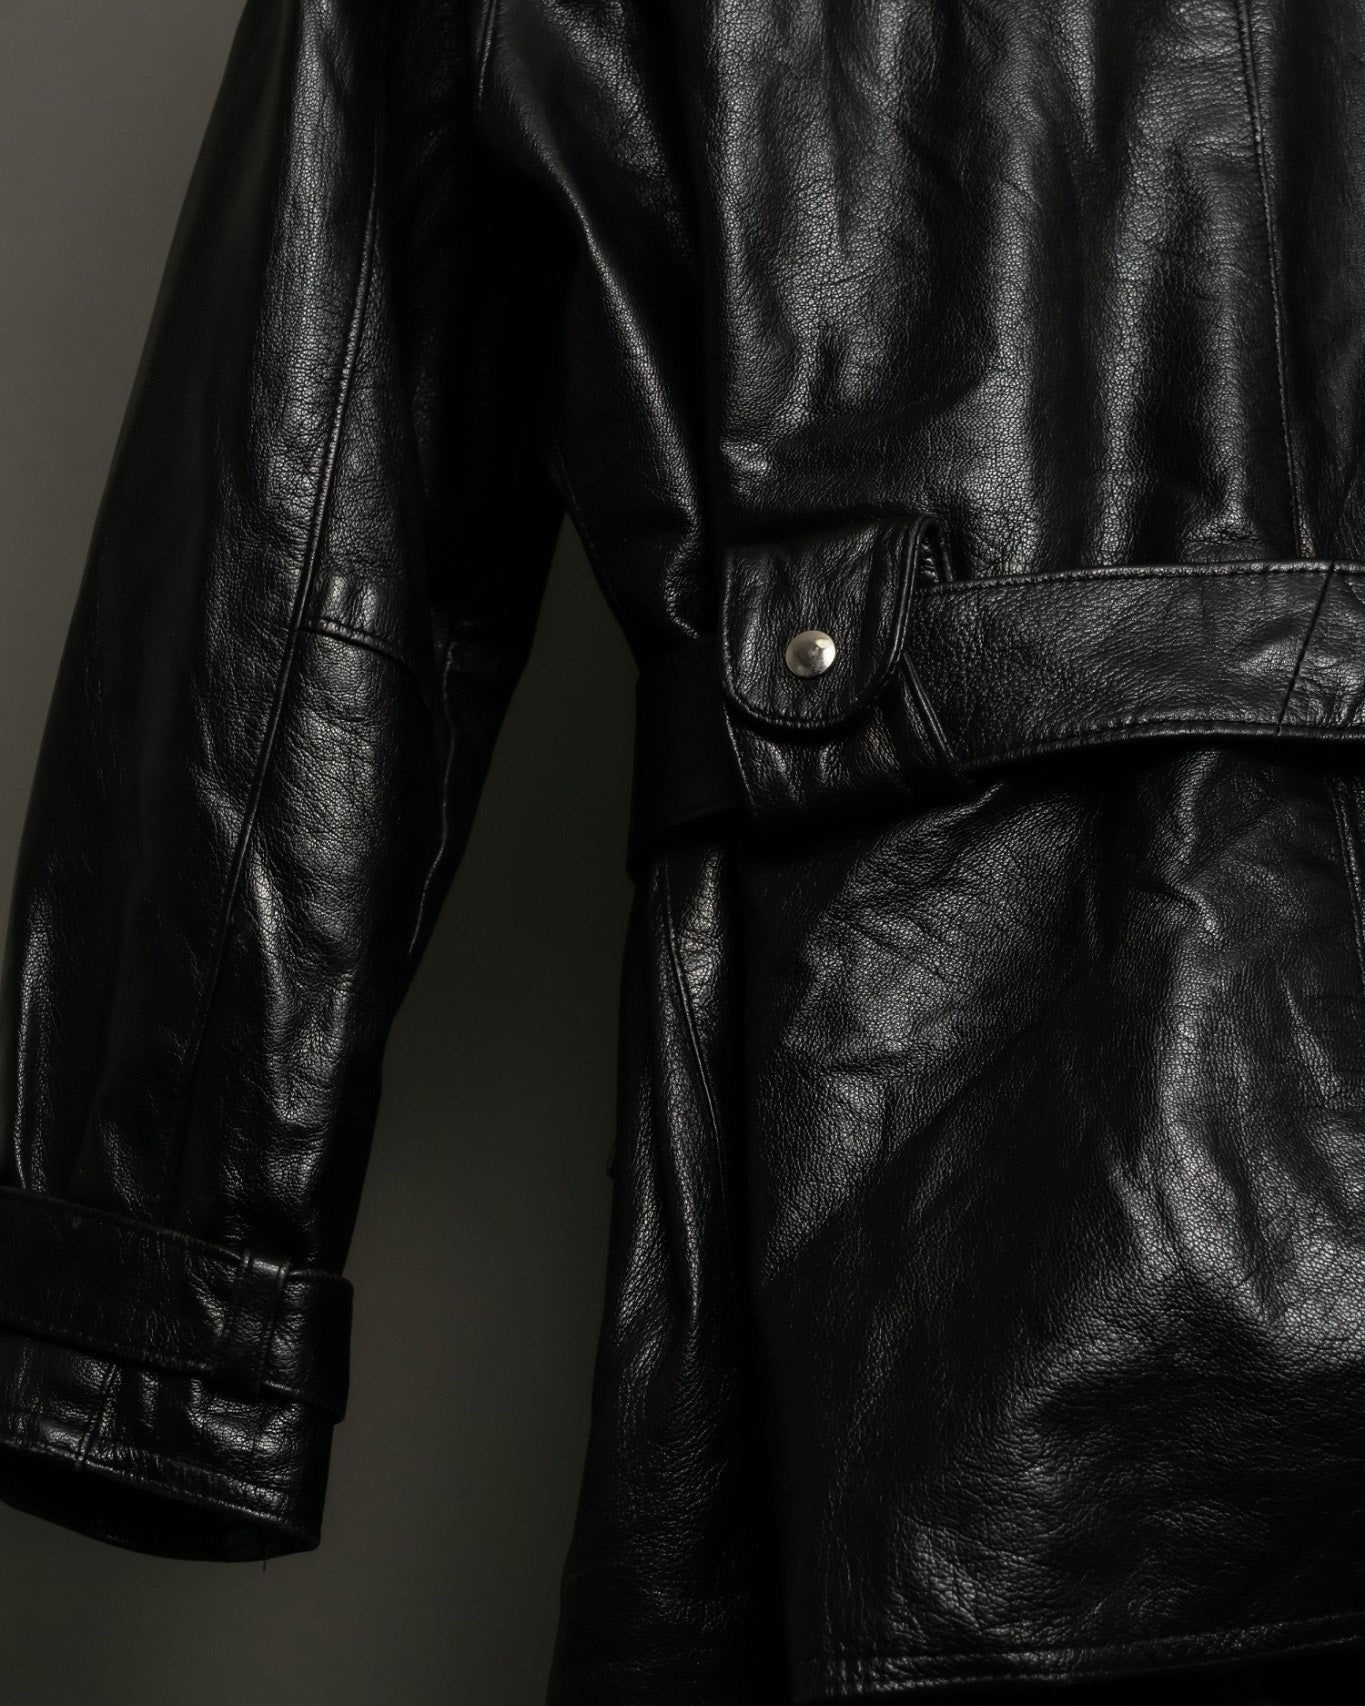 Beautiful Stylish  Leather Jacket